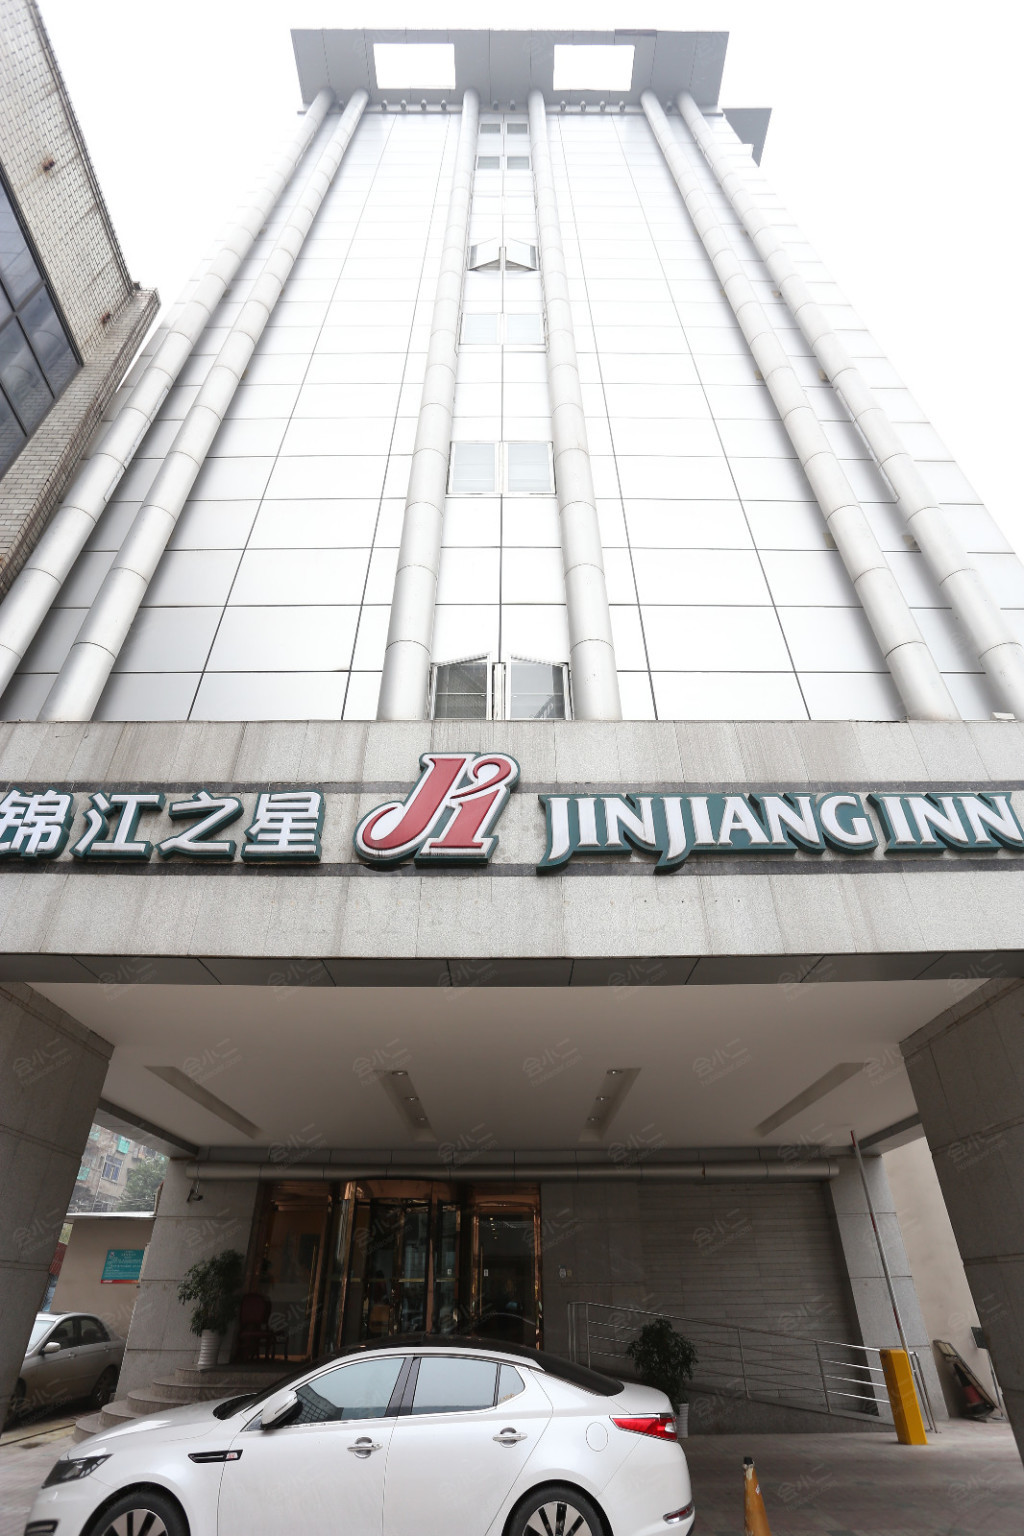 锦江之星国外首家特许经营酒店正式开张 -锦江国际（集团）有限公司